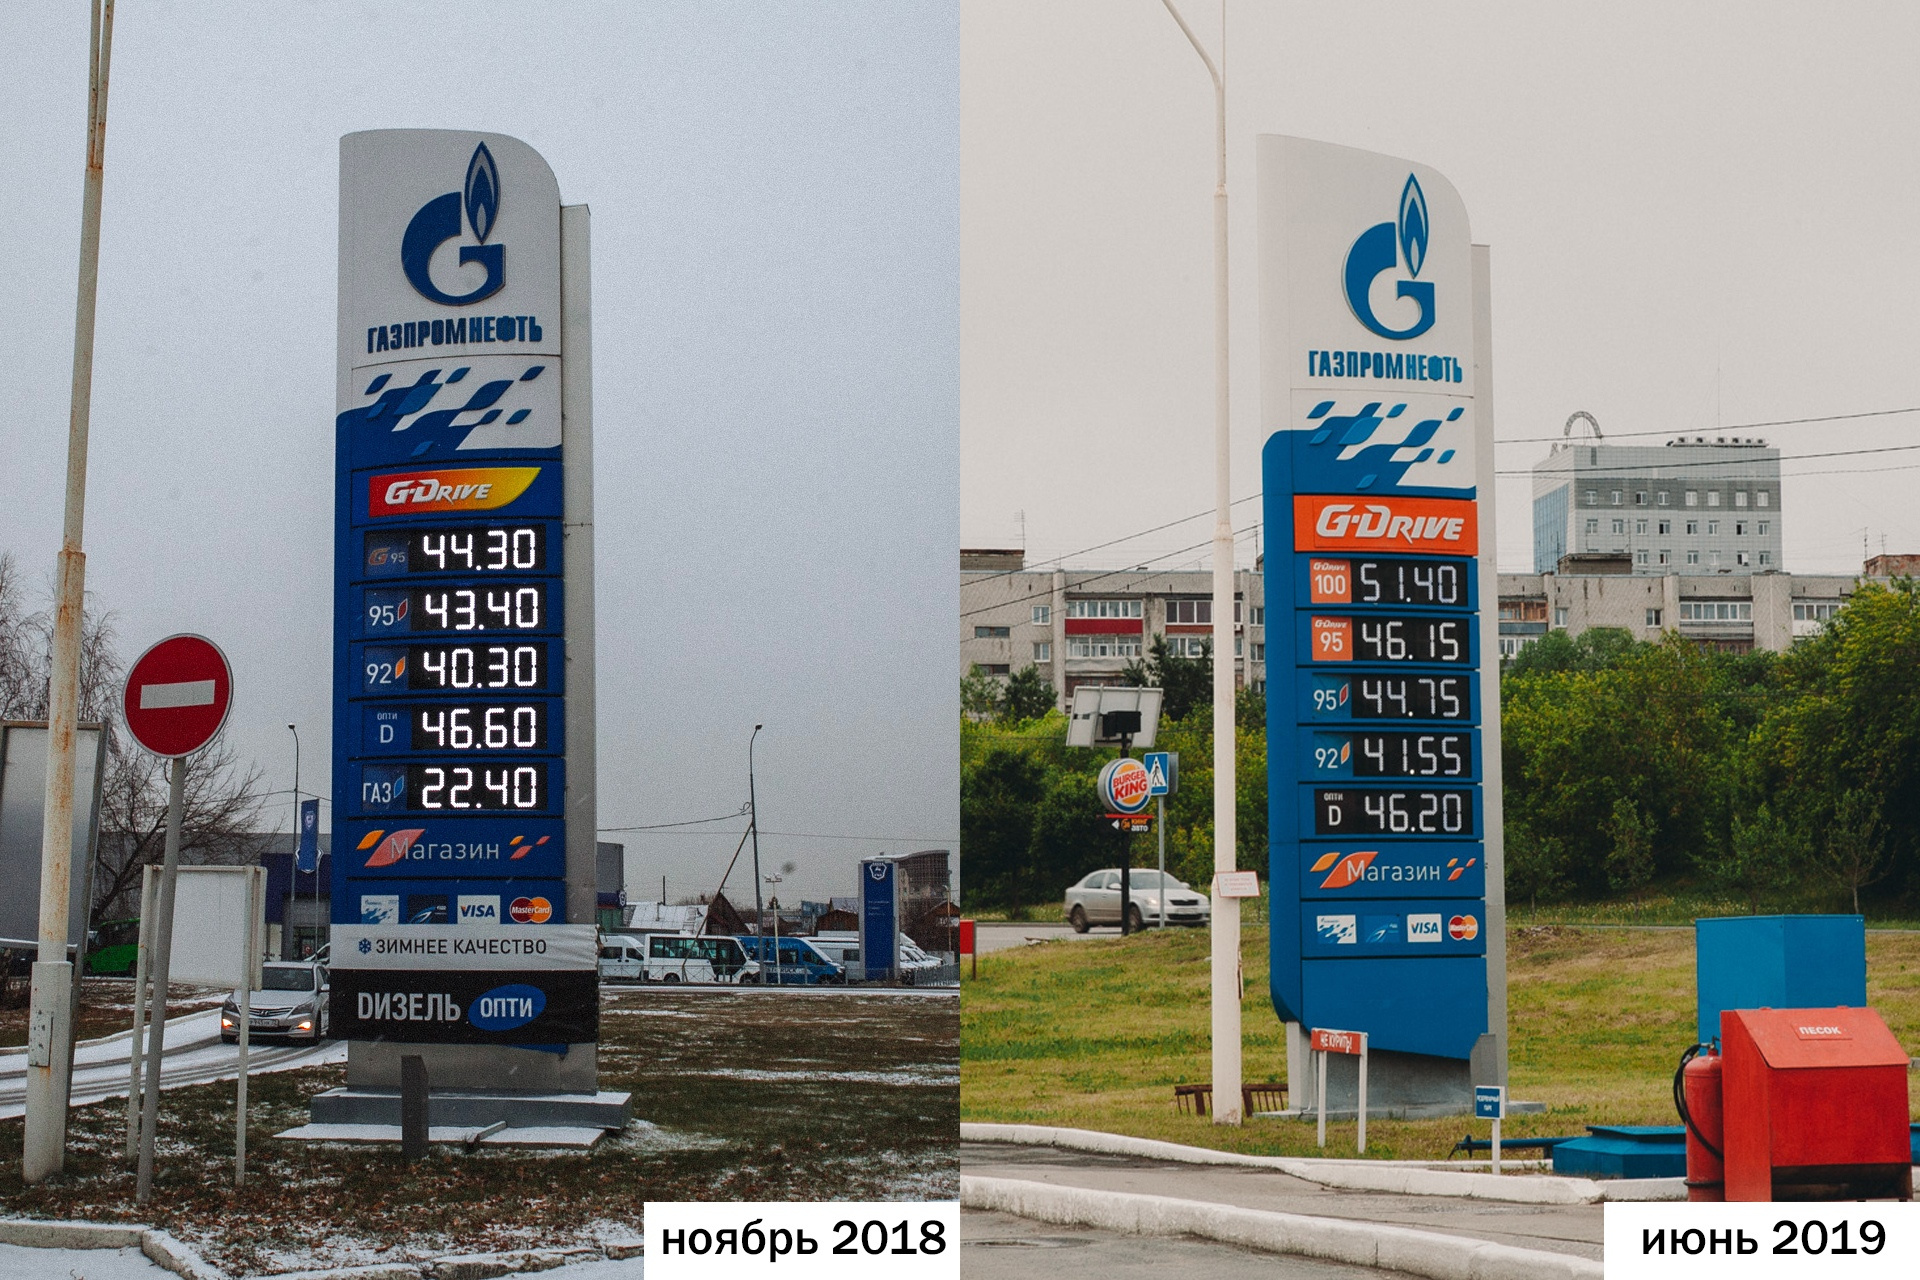 Мы сравнили, как изменились цены на топливо по сравнению с ноябрем 2018 года